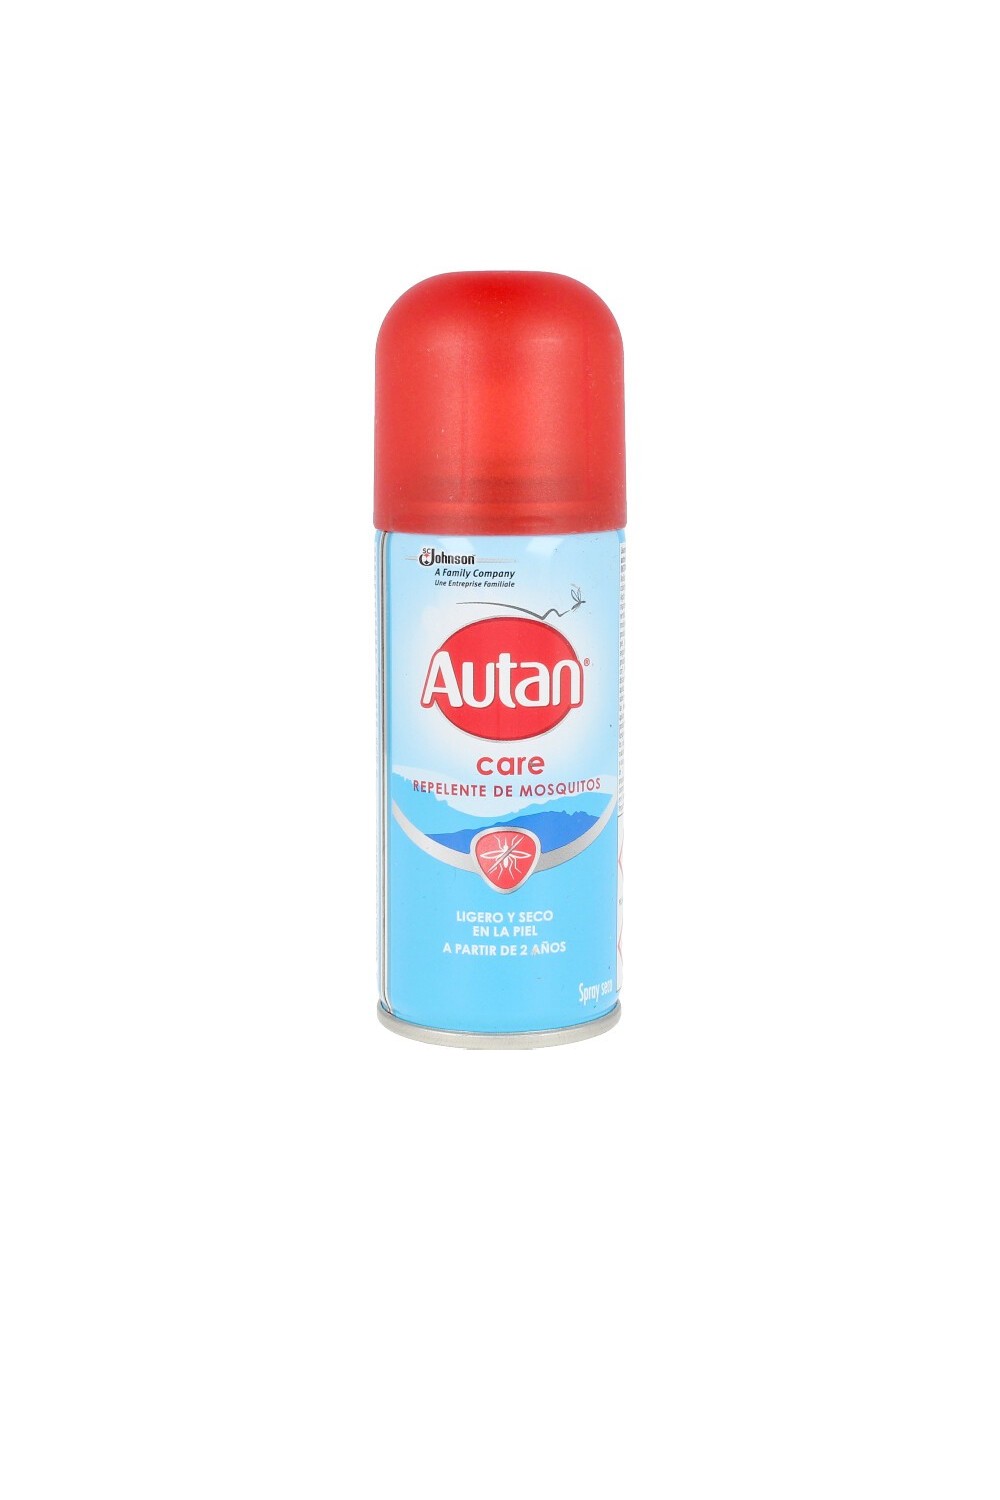 Autan Care Mosquito Repellent Spray 100ml